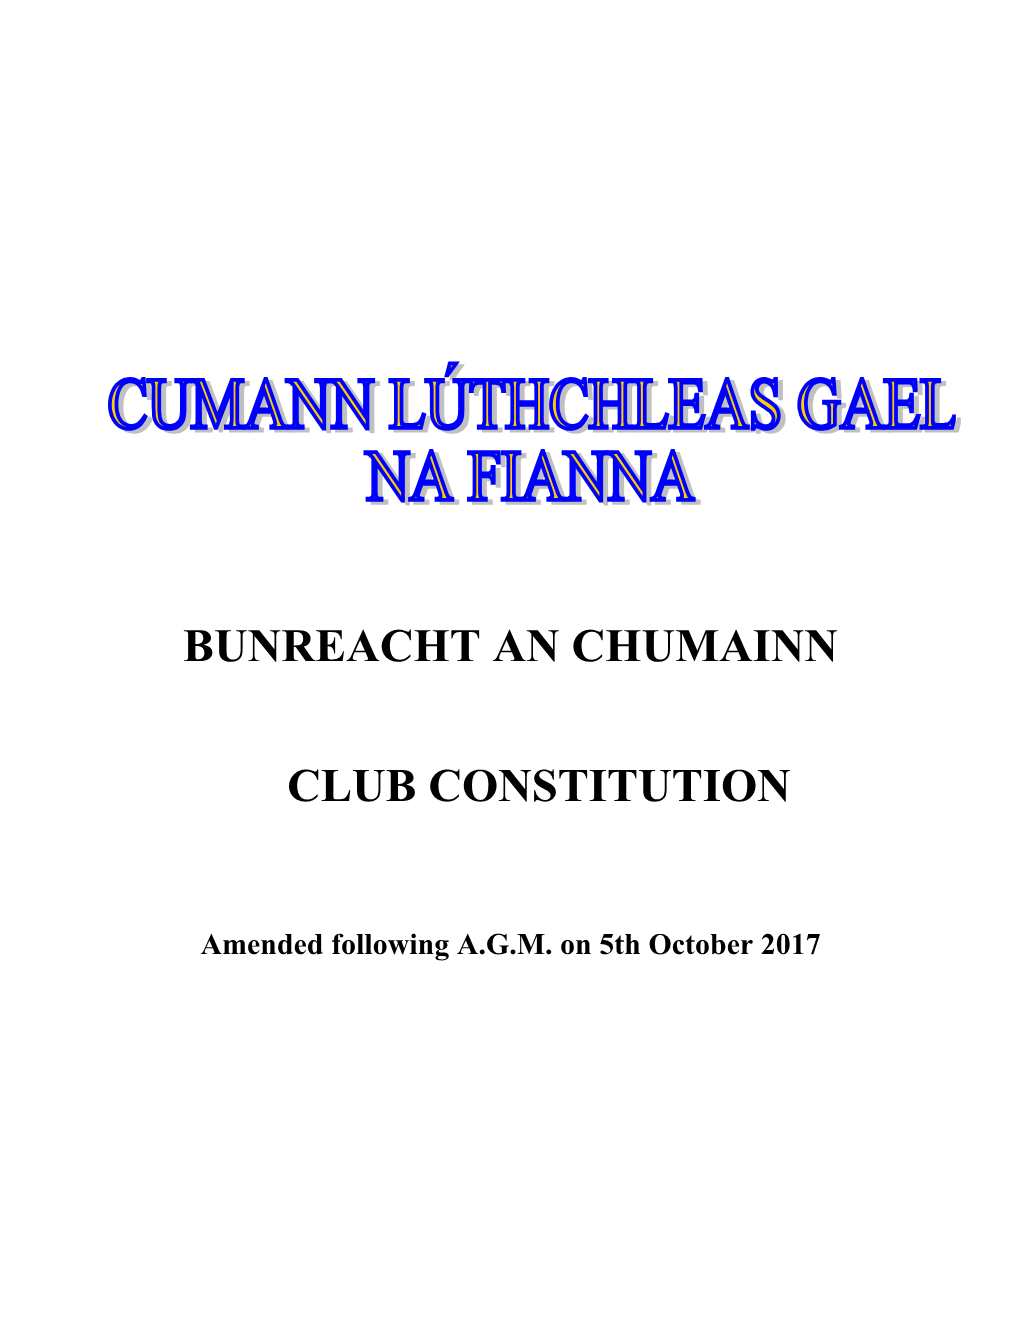 Cumann Lúthchleas Gael Na Fianna